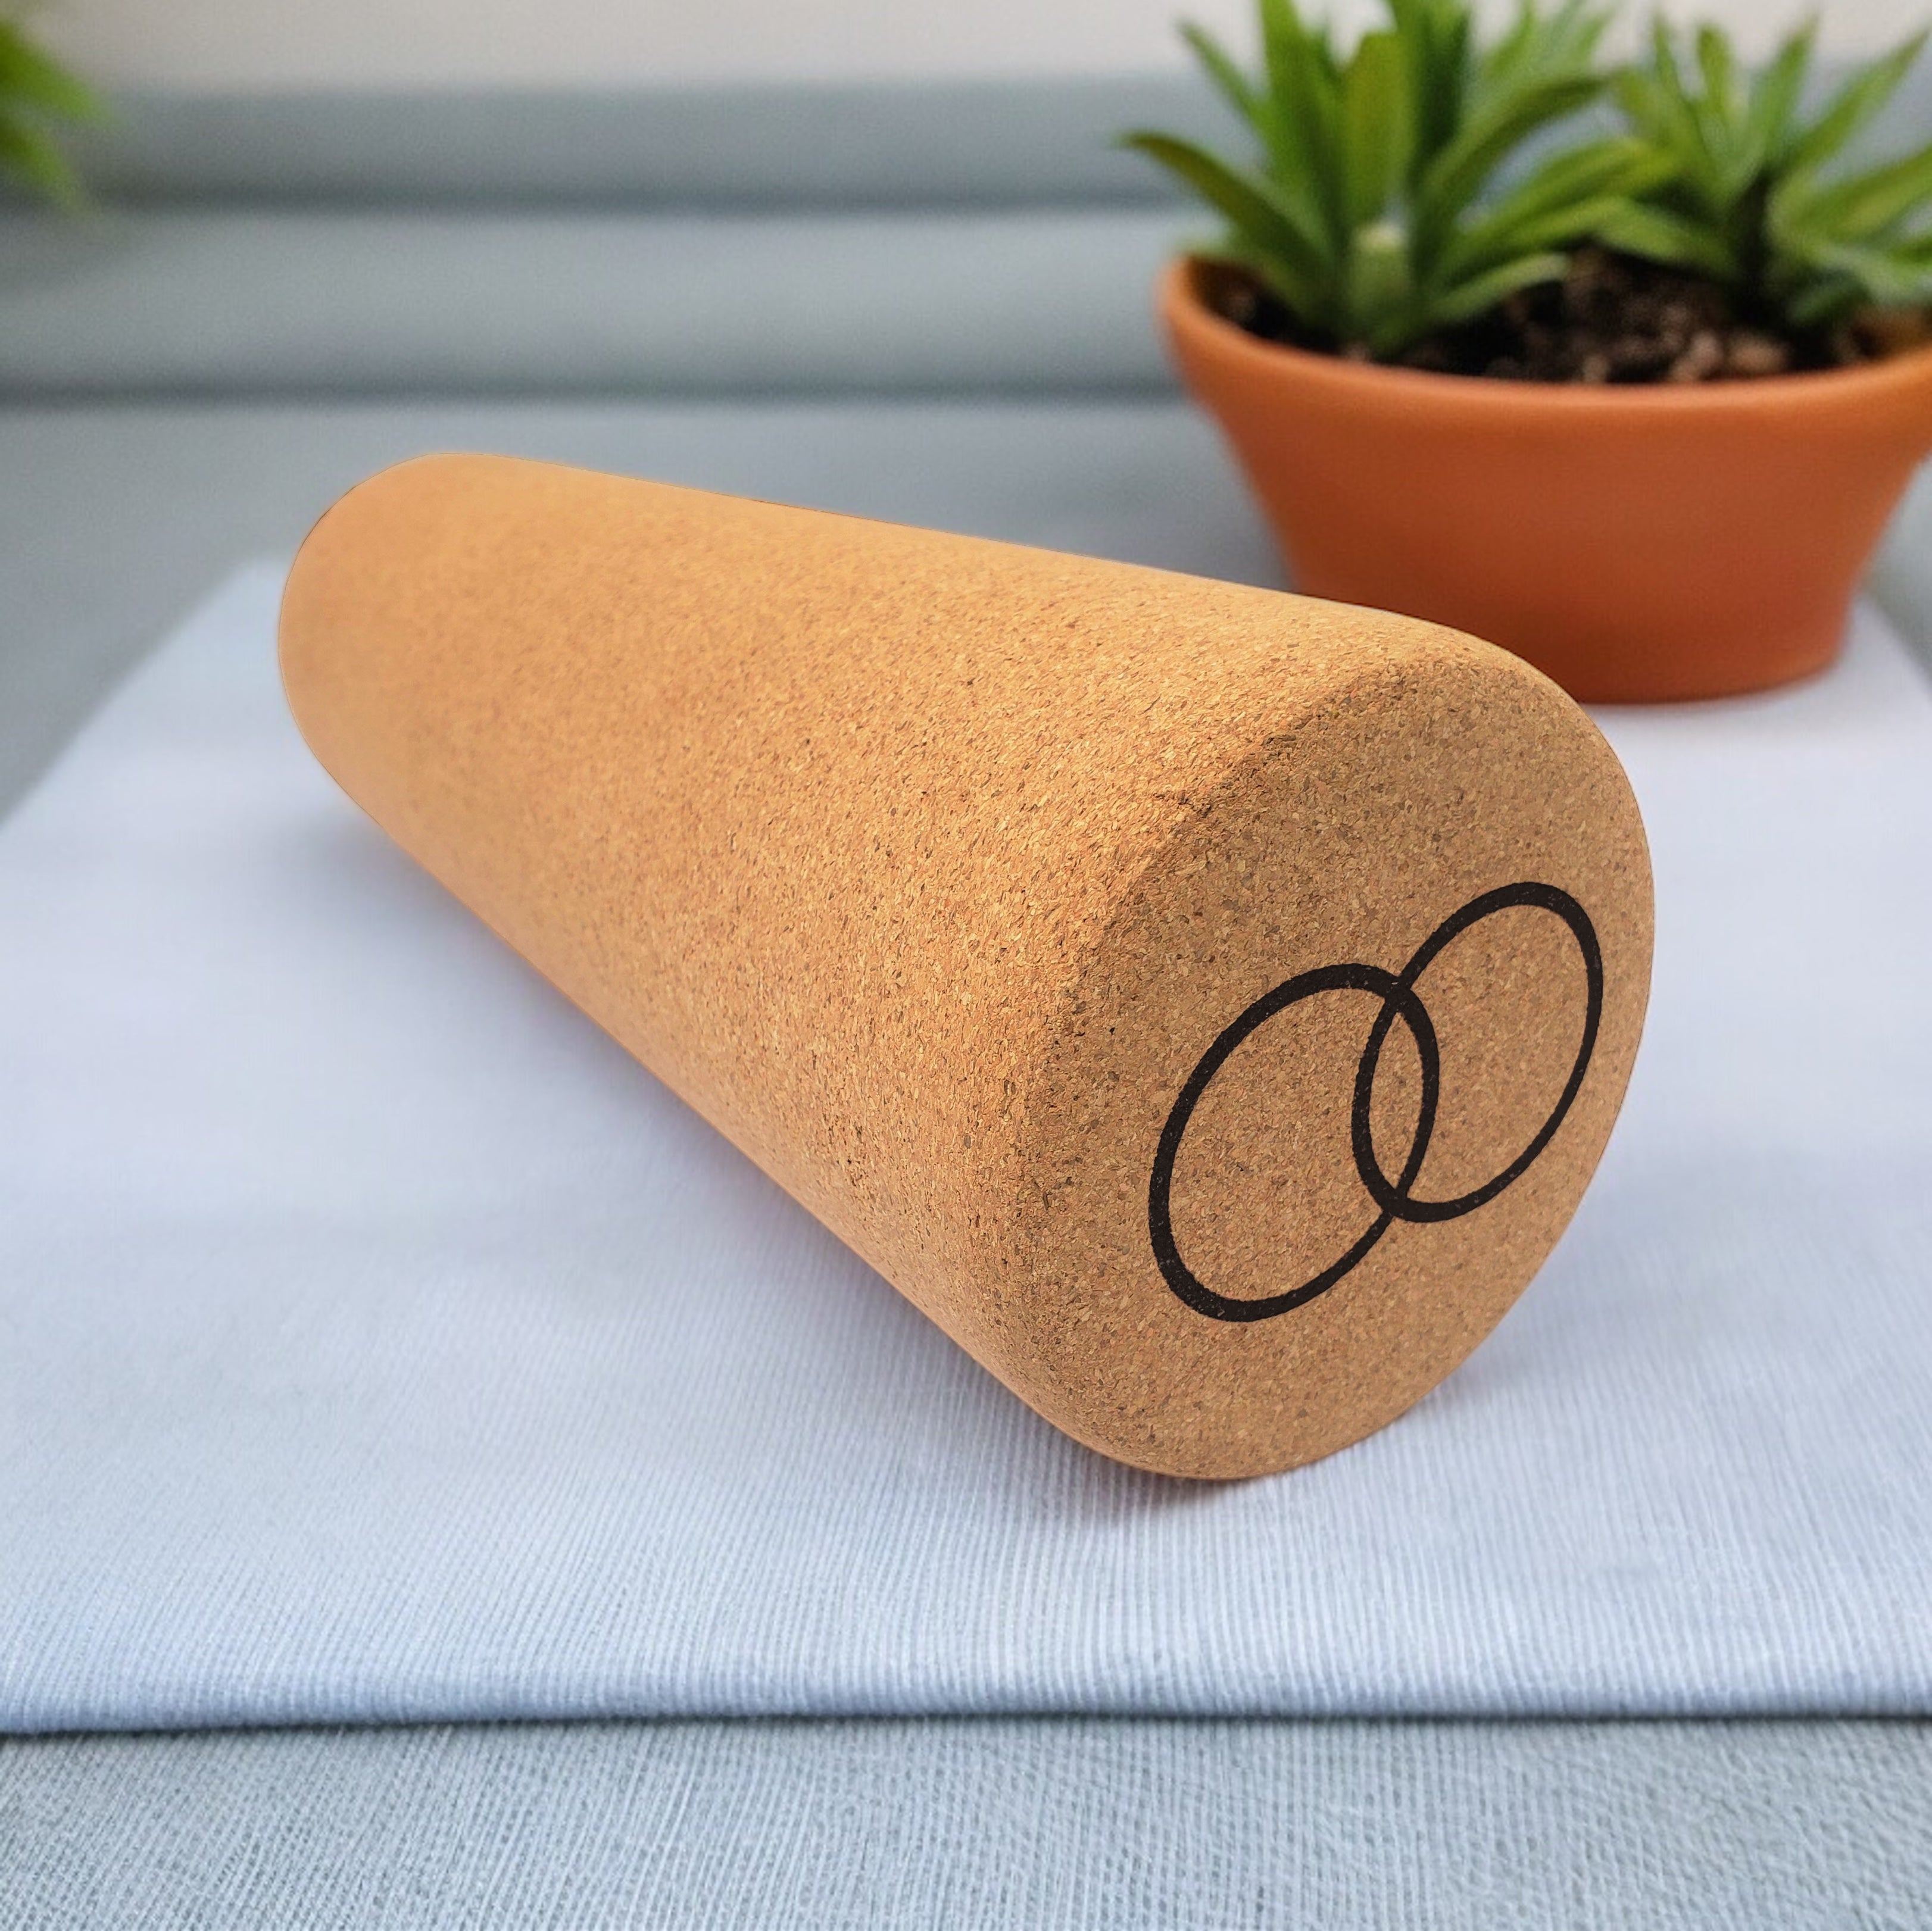 Serenity cork massage roller